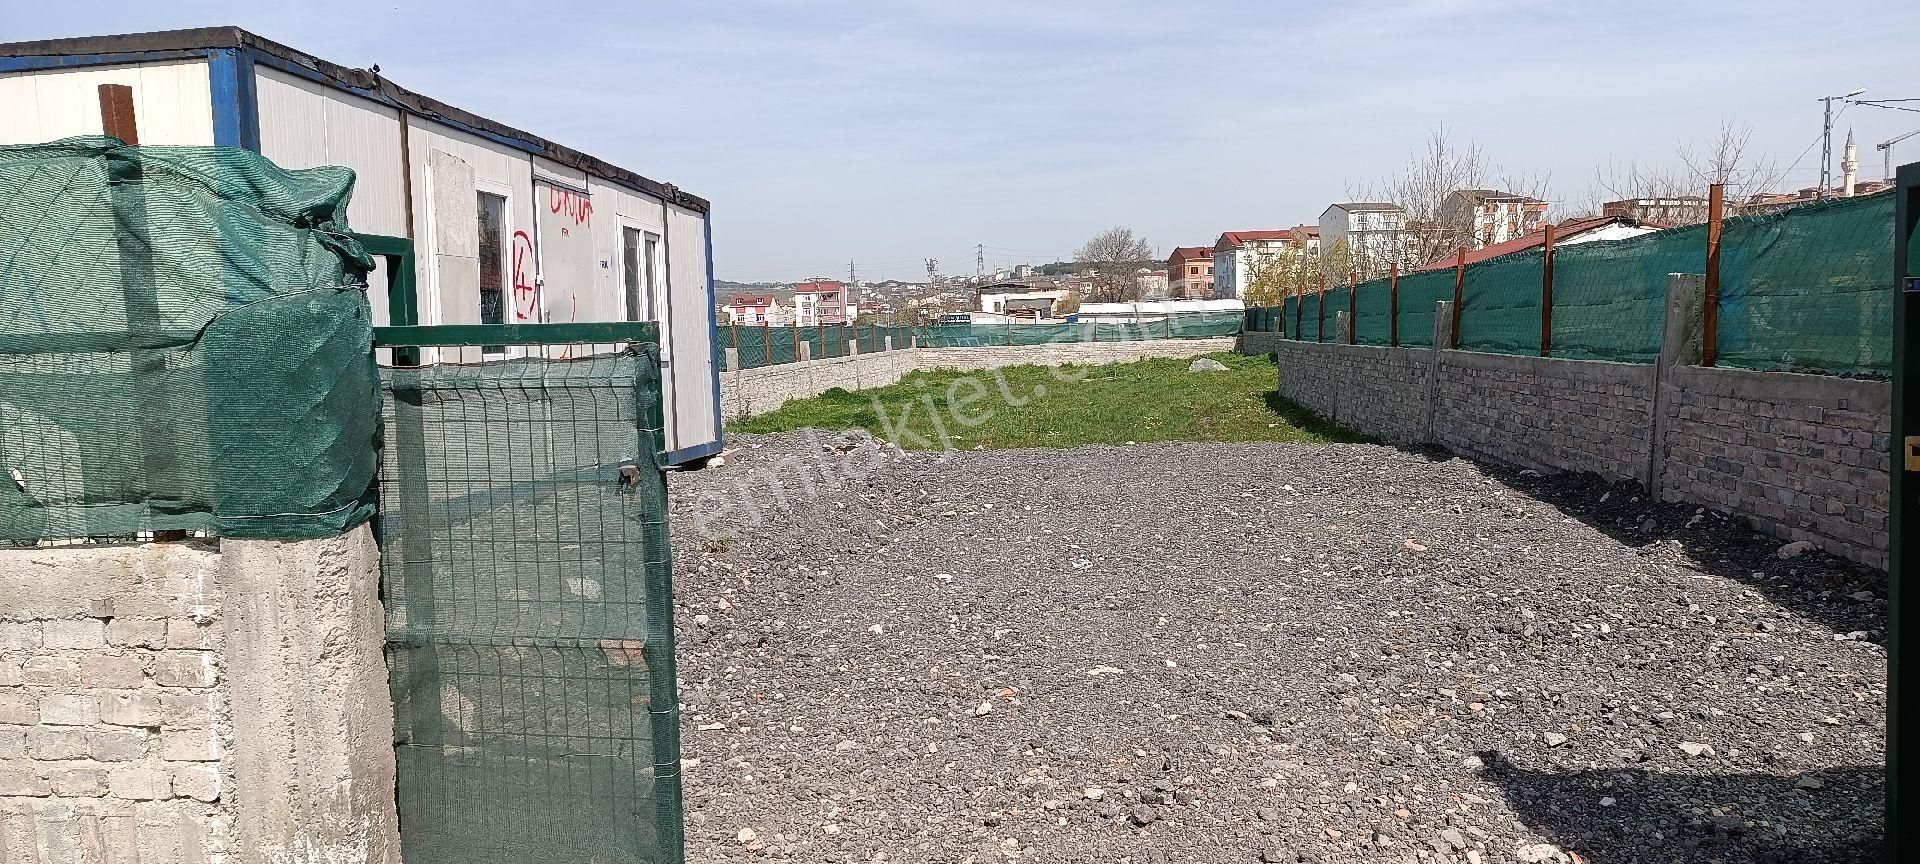 Arnavutköy Adnan Menderes Kiralık Genel 700m arsa etrafı taş duvar ve tel çevrili 